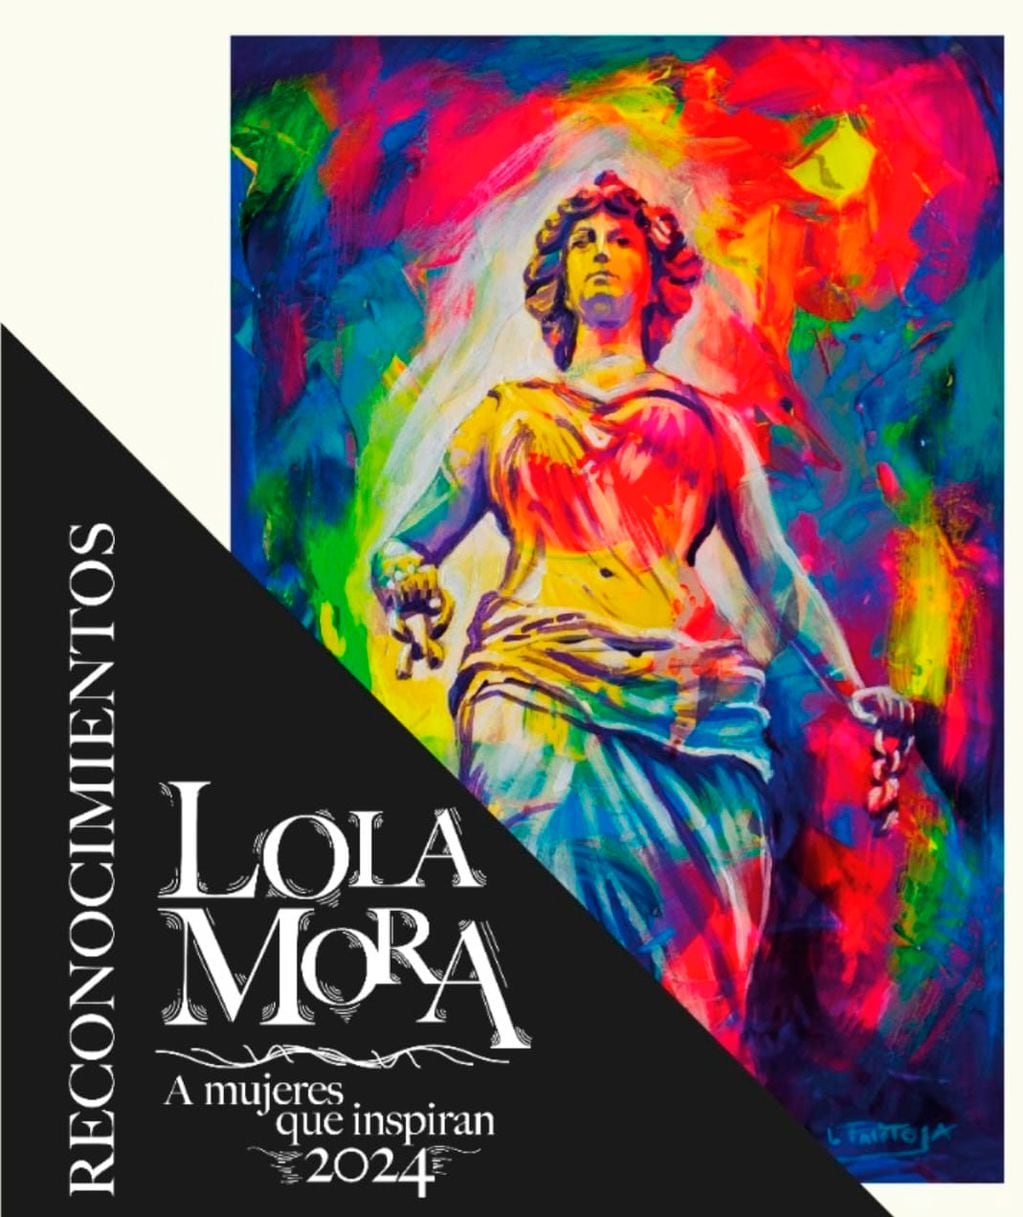 Este martes el Concejo Deliberante de San Salvador de Jujuy otorgará los reconocimientos “Lola Mora” 2024 "a mujeres que inspiran".